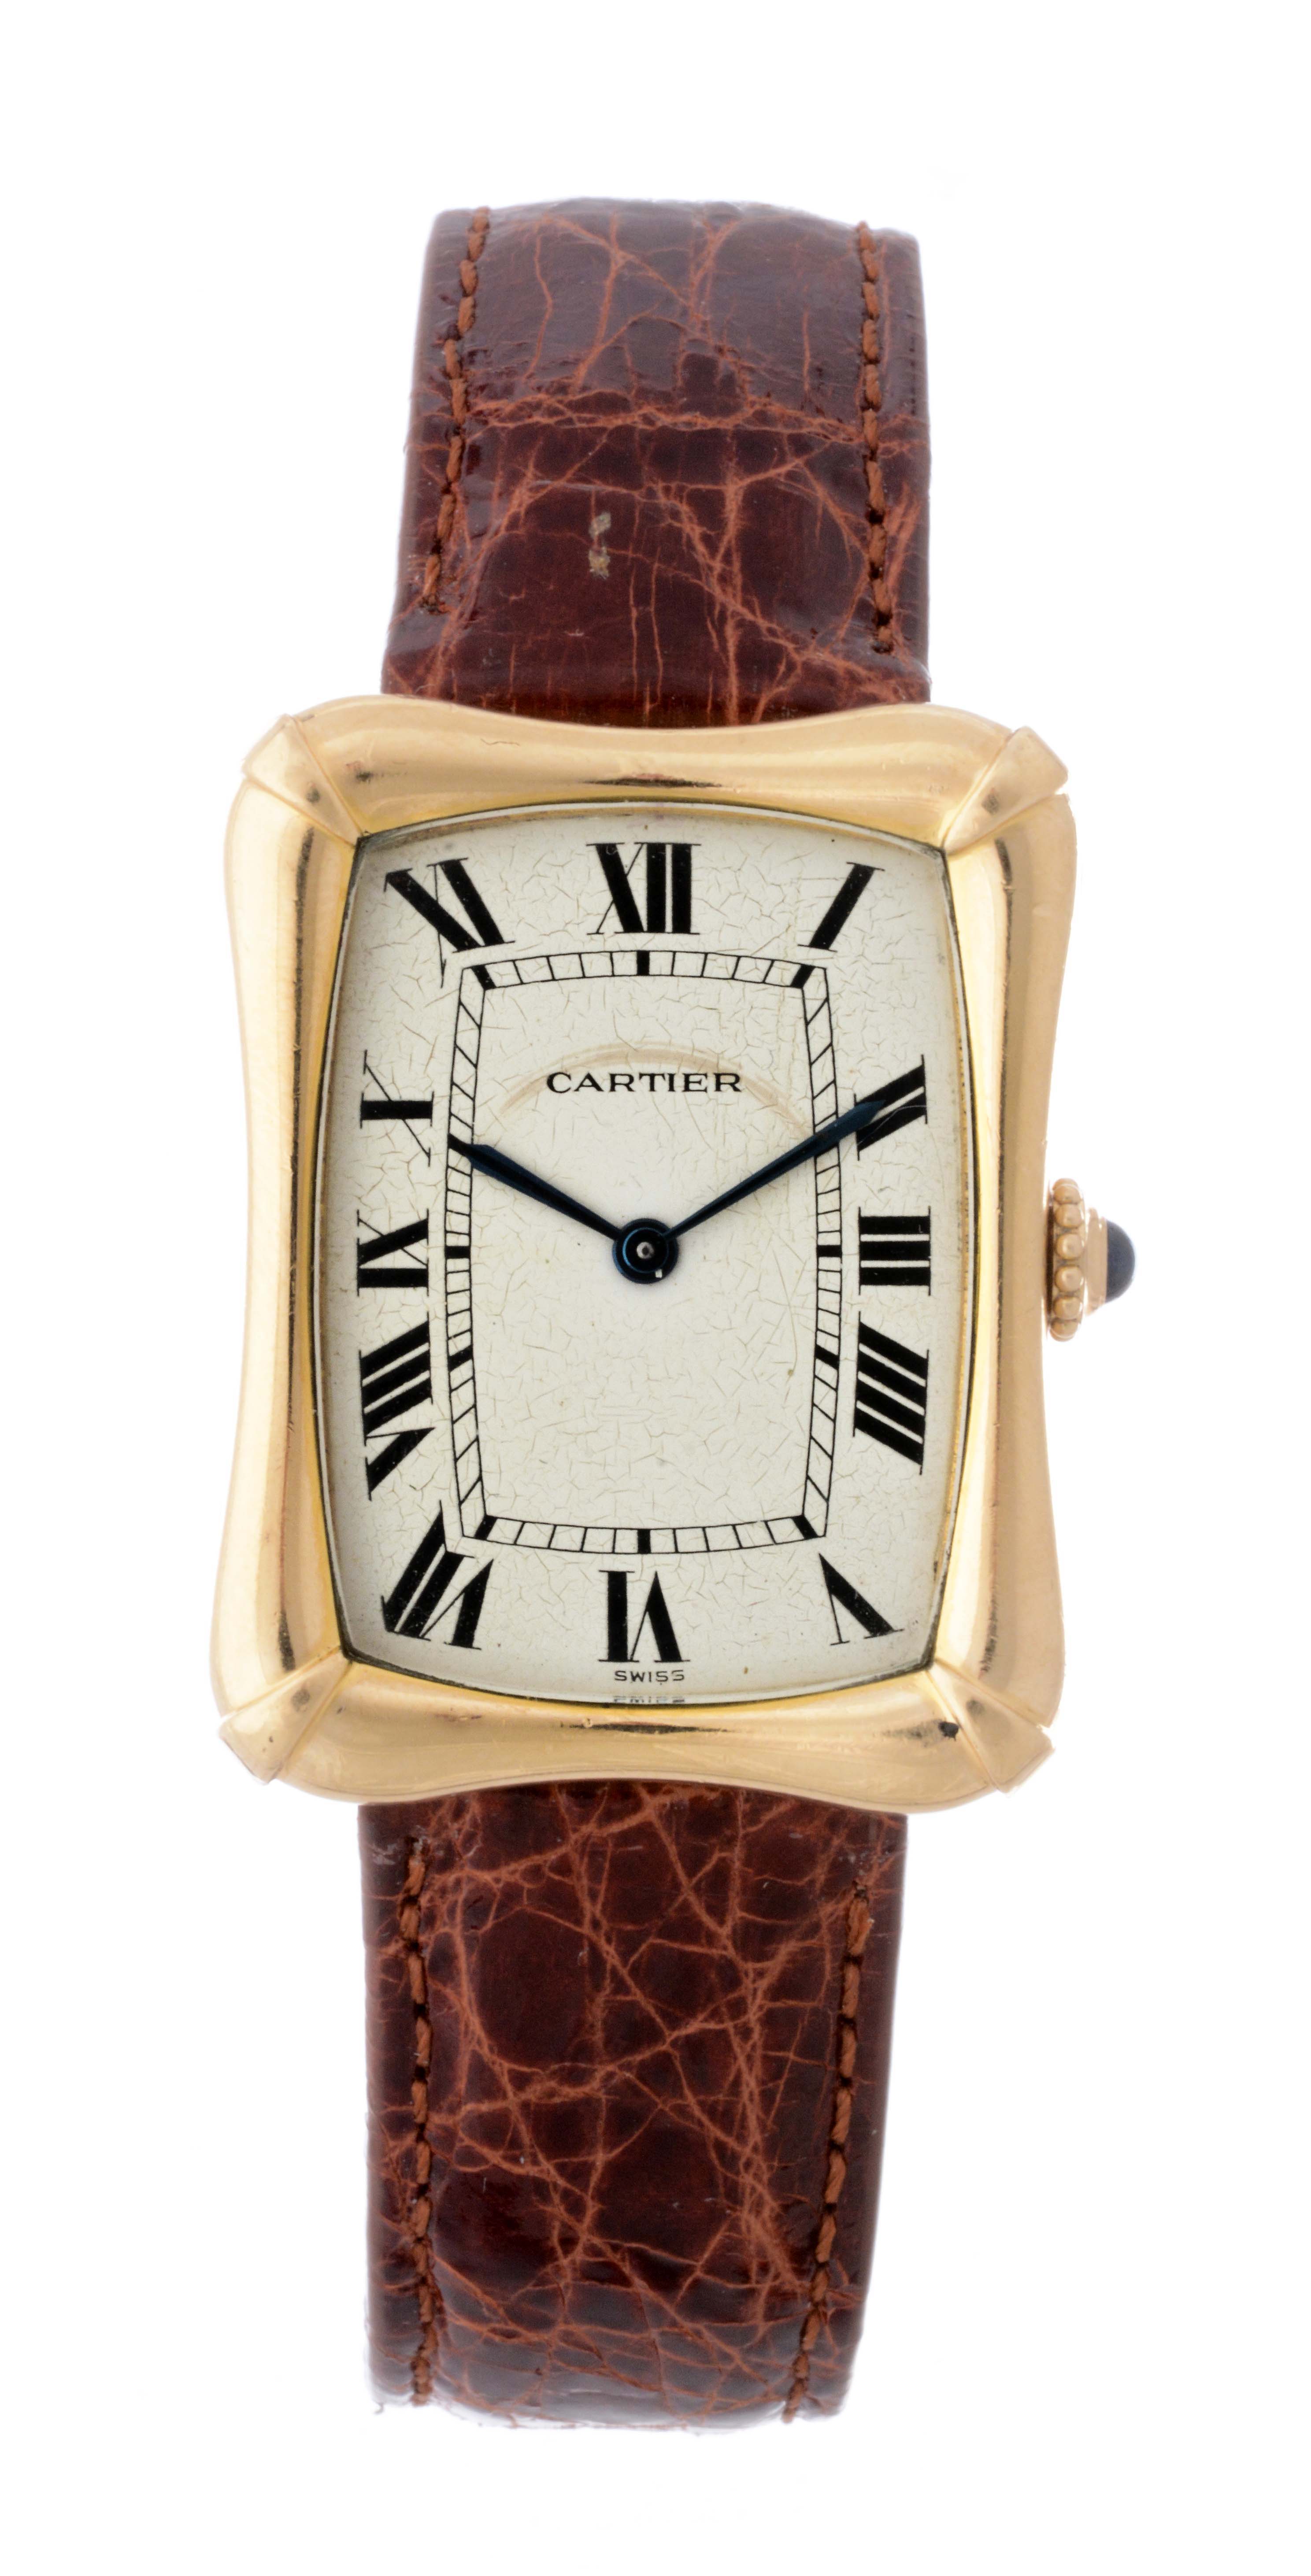 Cartier 18k Fancy Cased Wristwatch Model # 69074, estimated at $4,000-6,000.